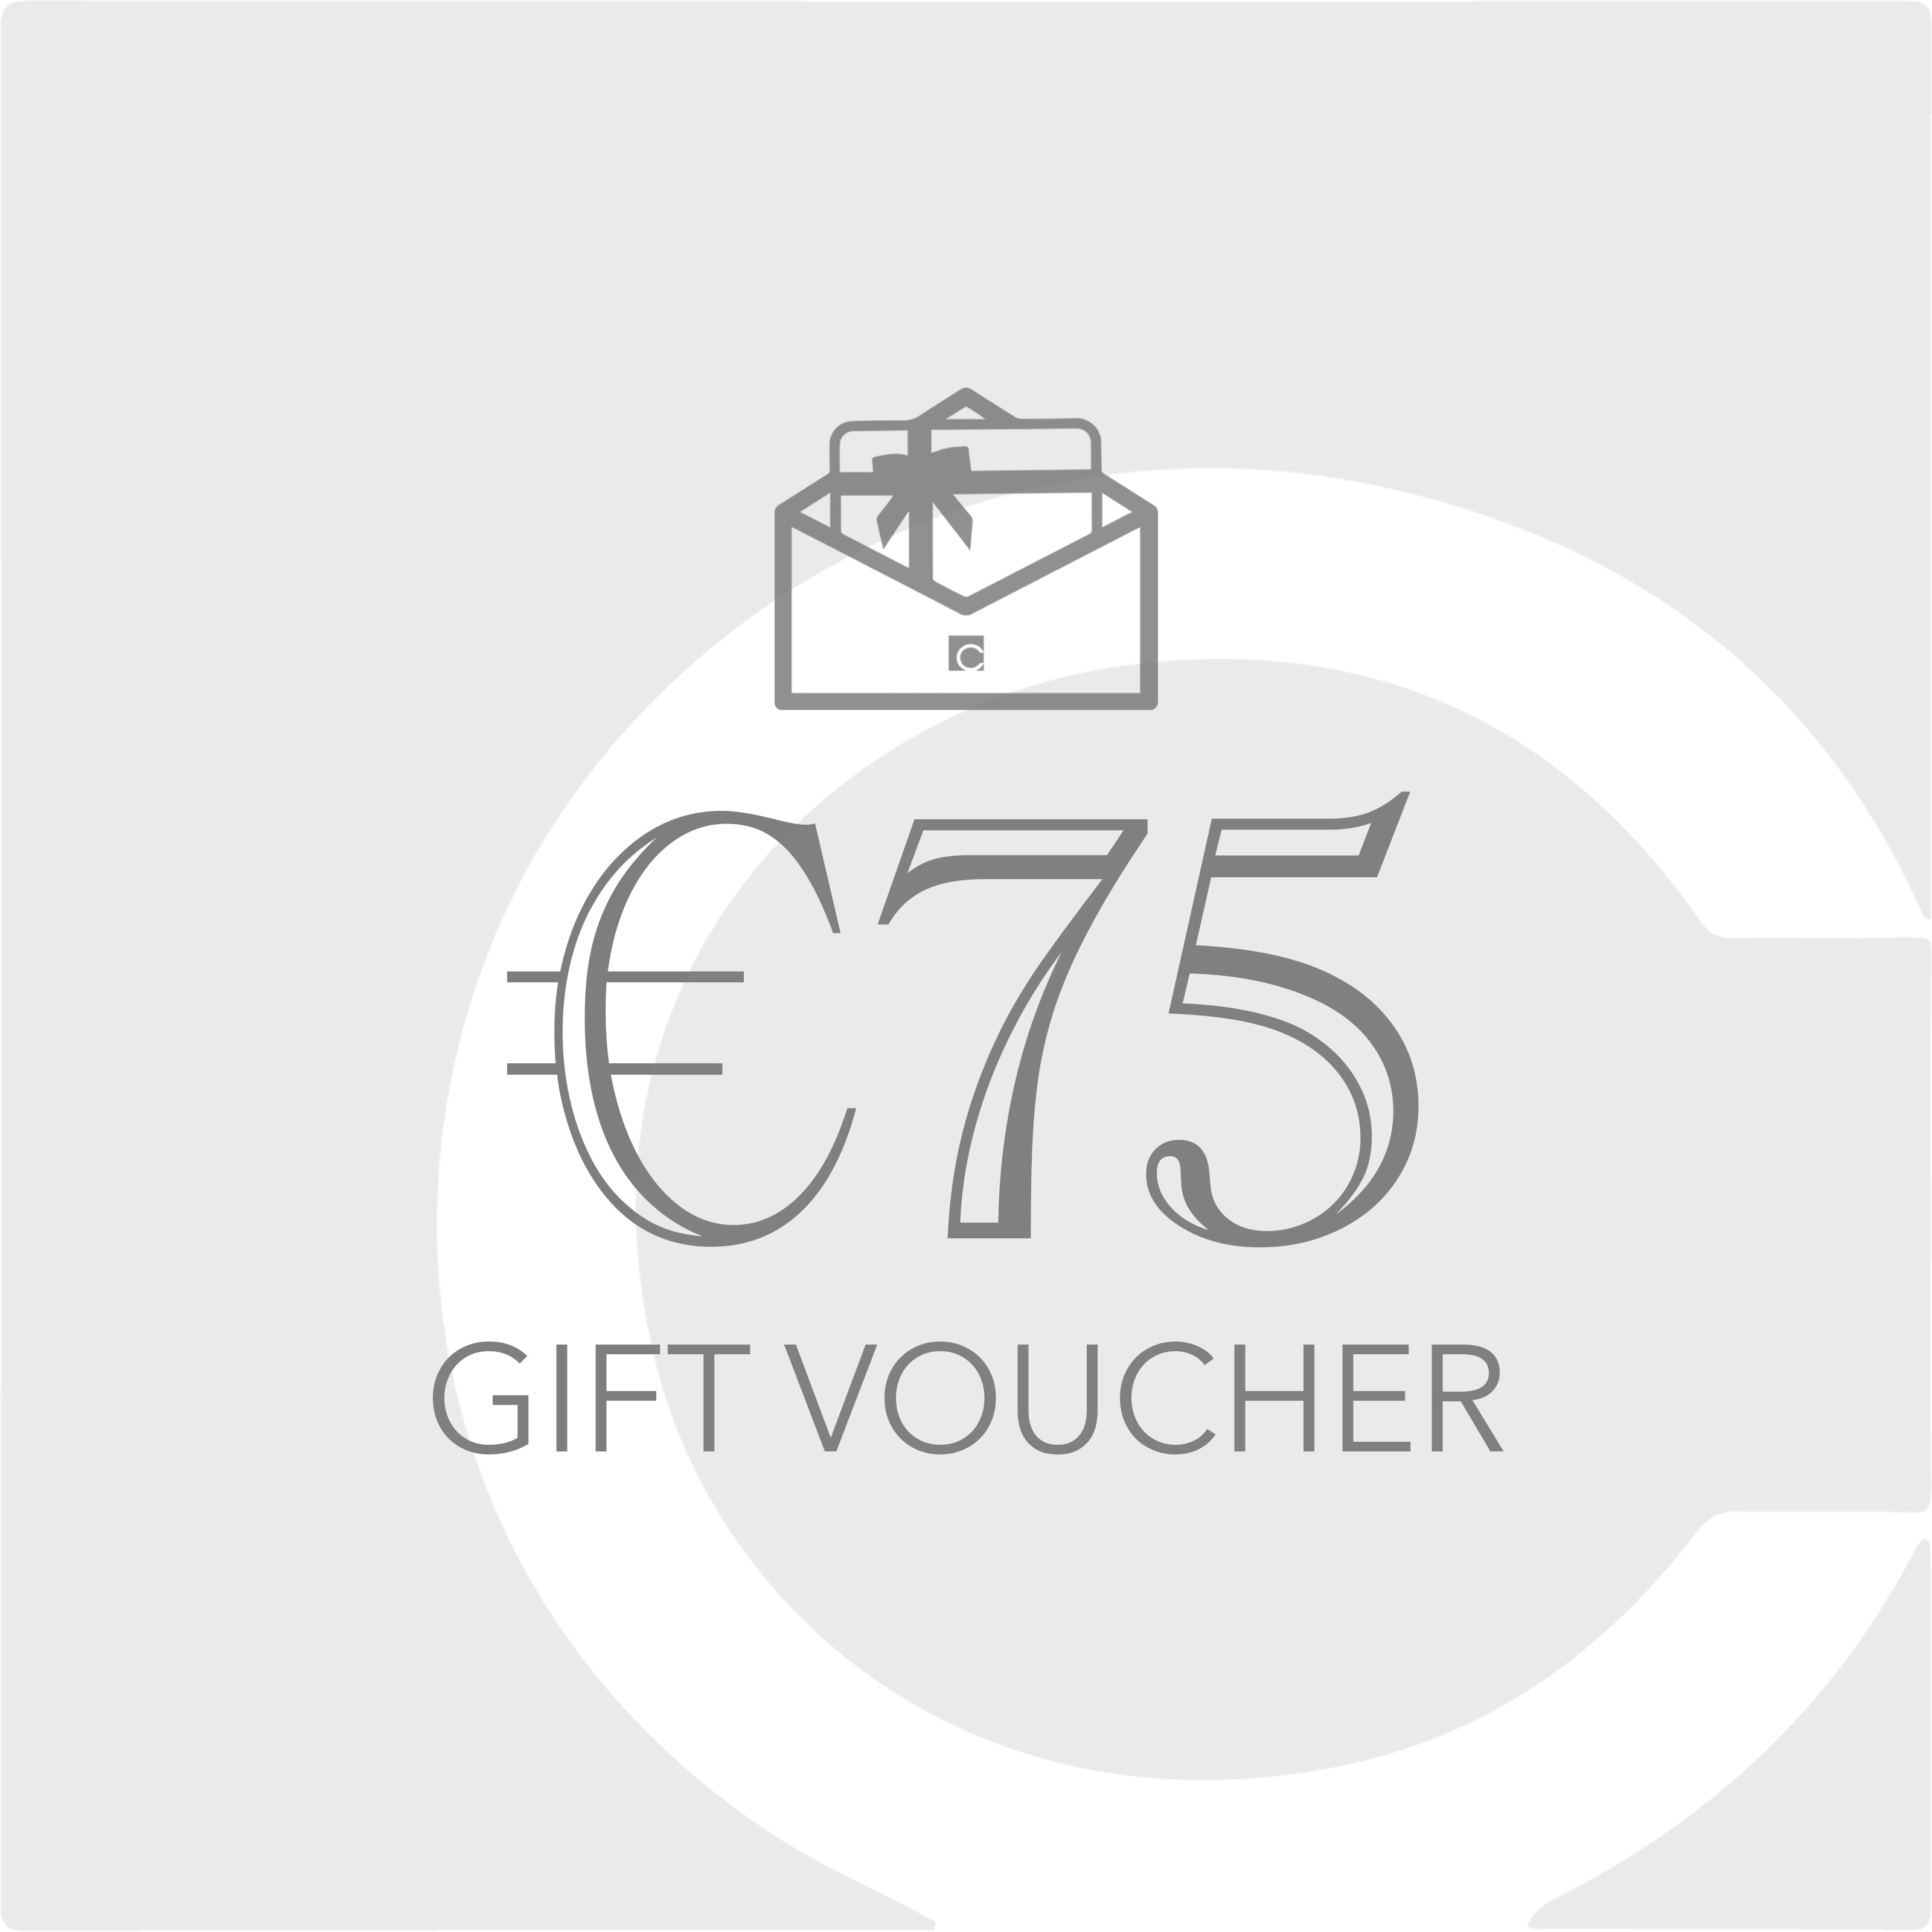 €75 Gift Voucher